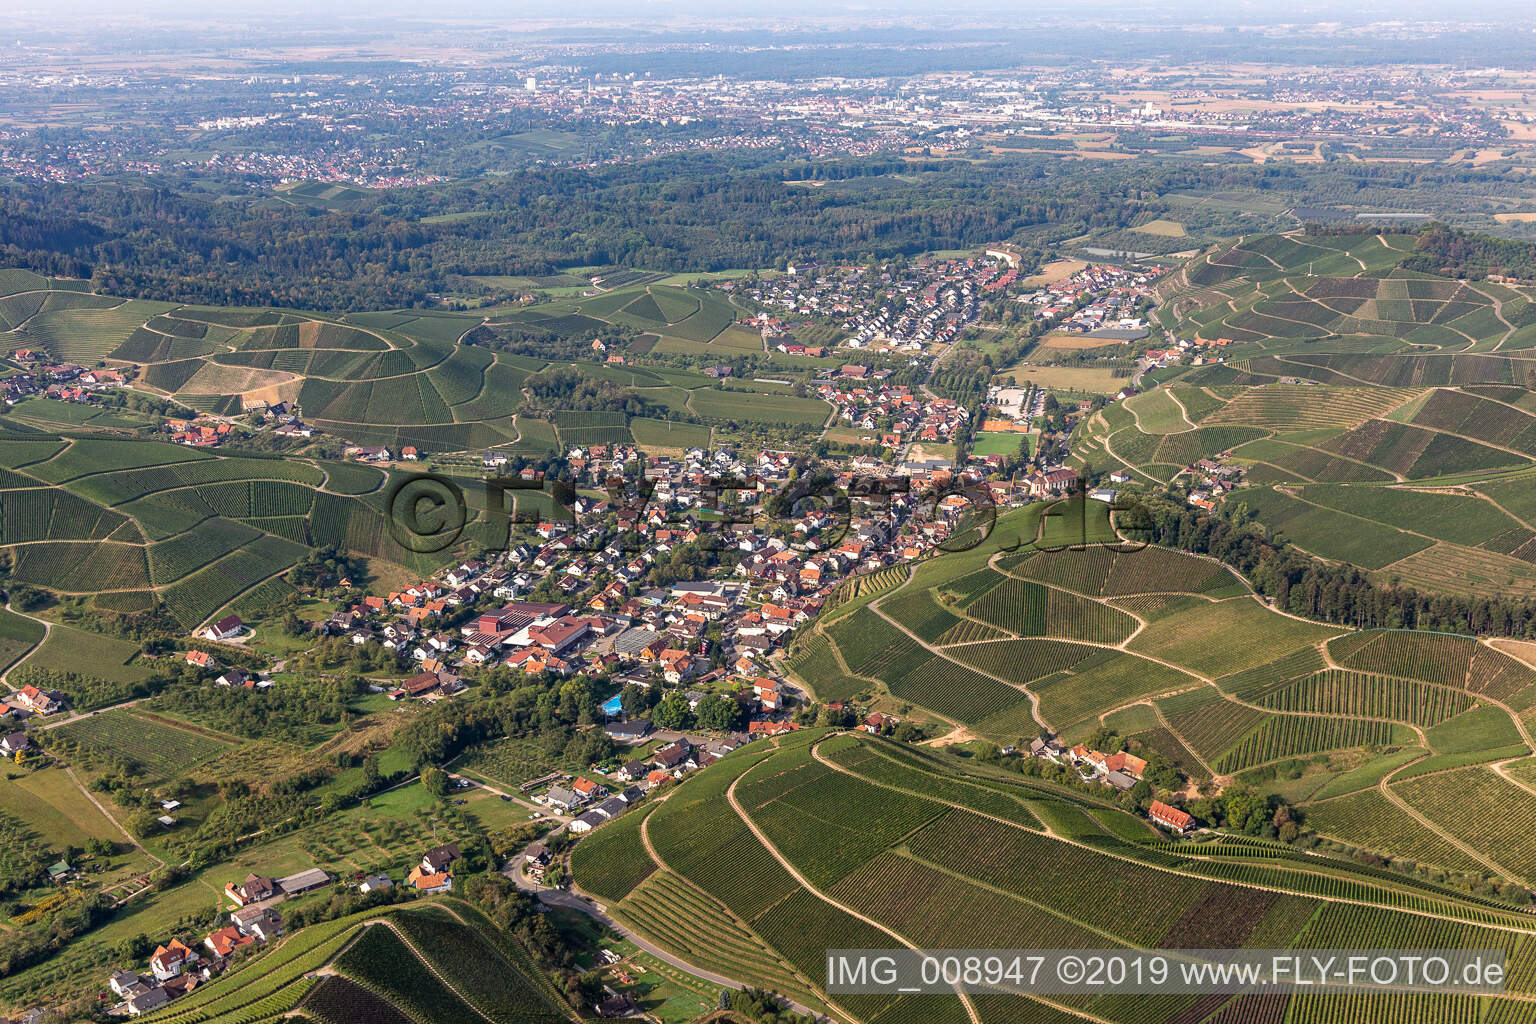 Luftbild von Durbach im Bundesland Baden-Württemberg, Deutschland